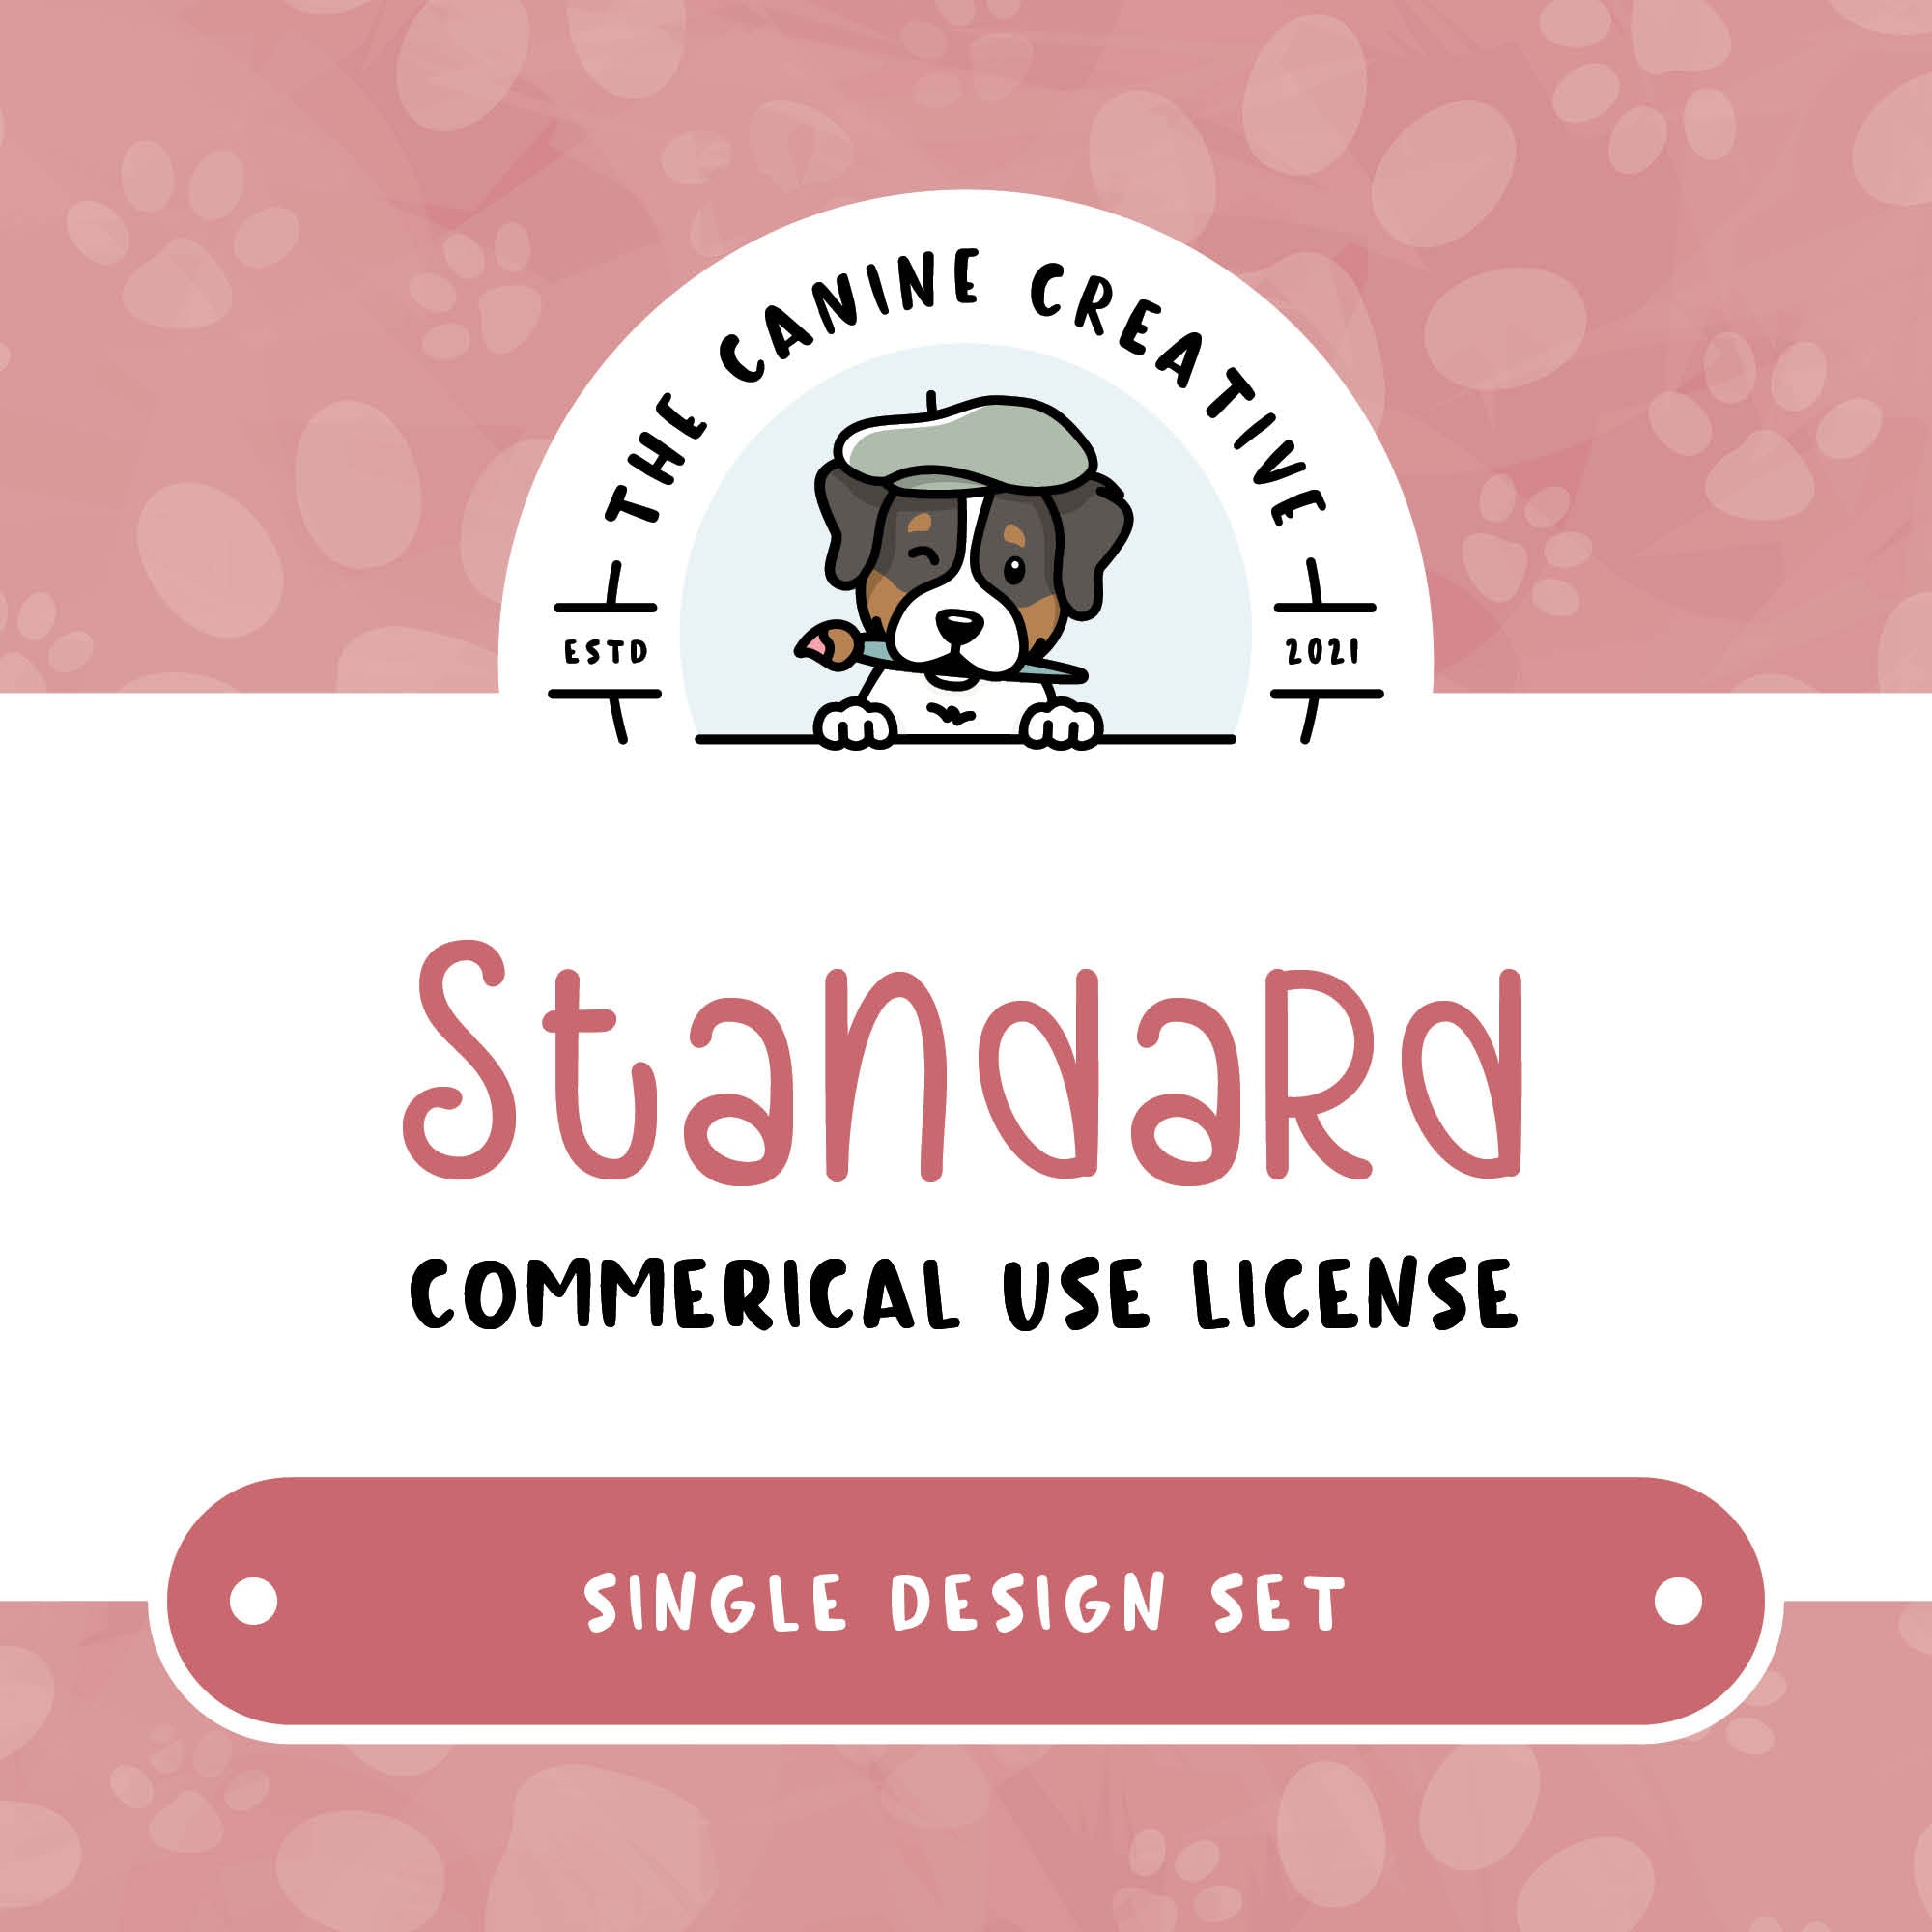 Standard Commercial Use License - Single Design Set